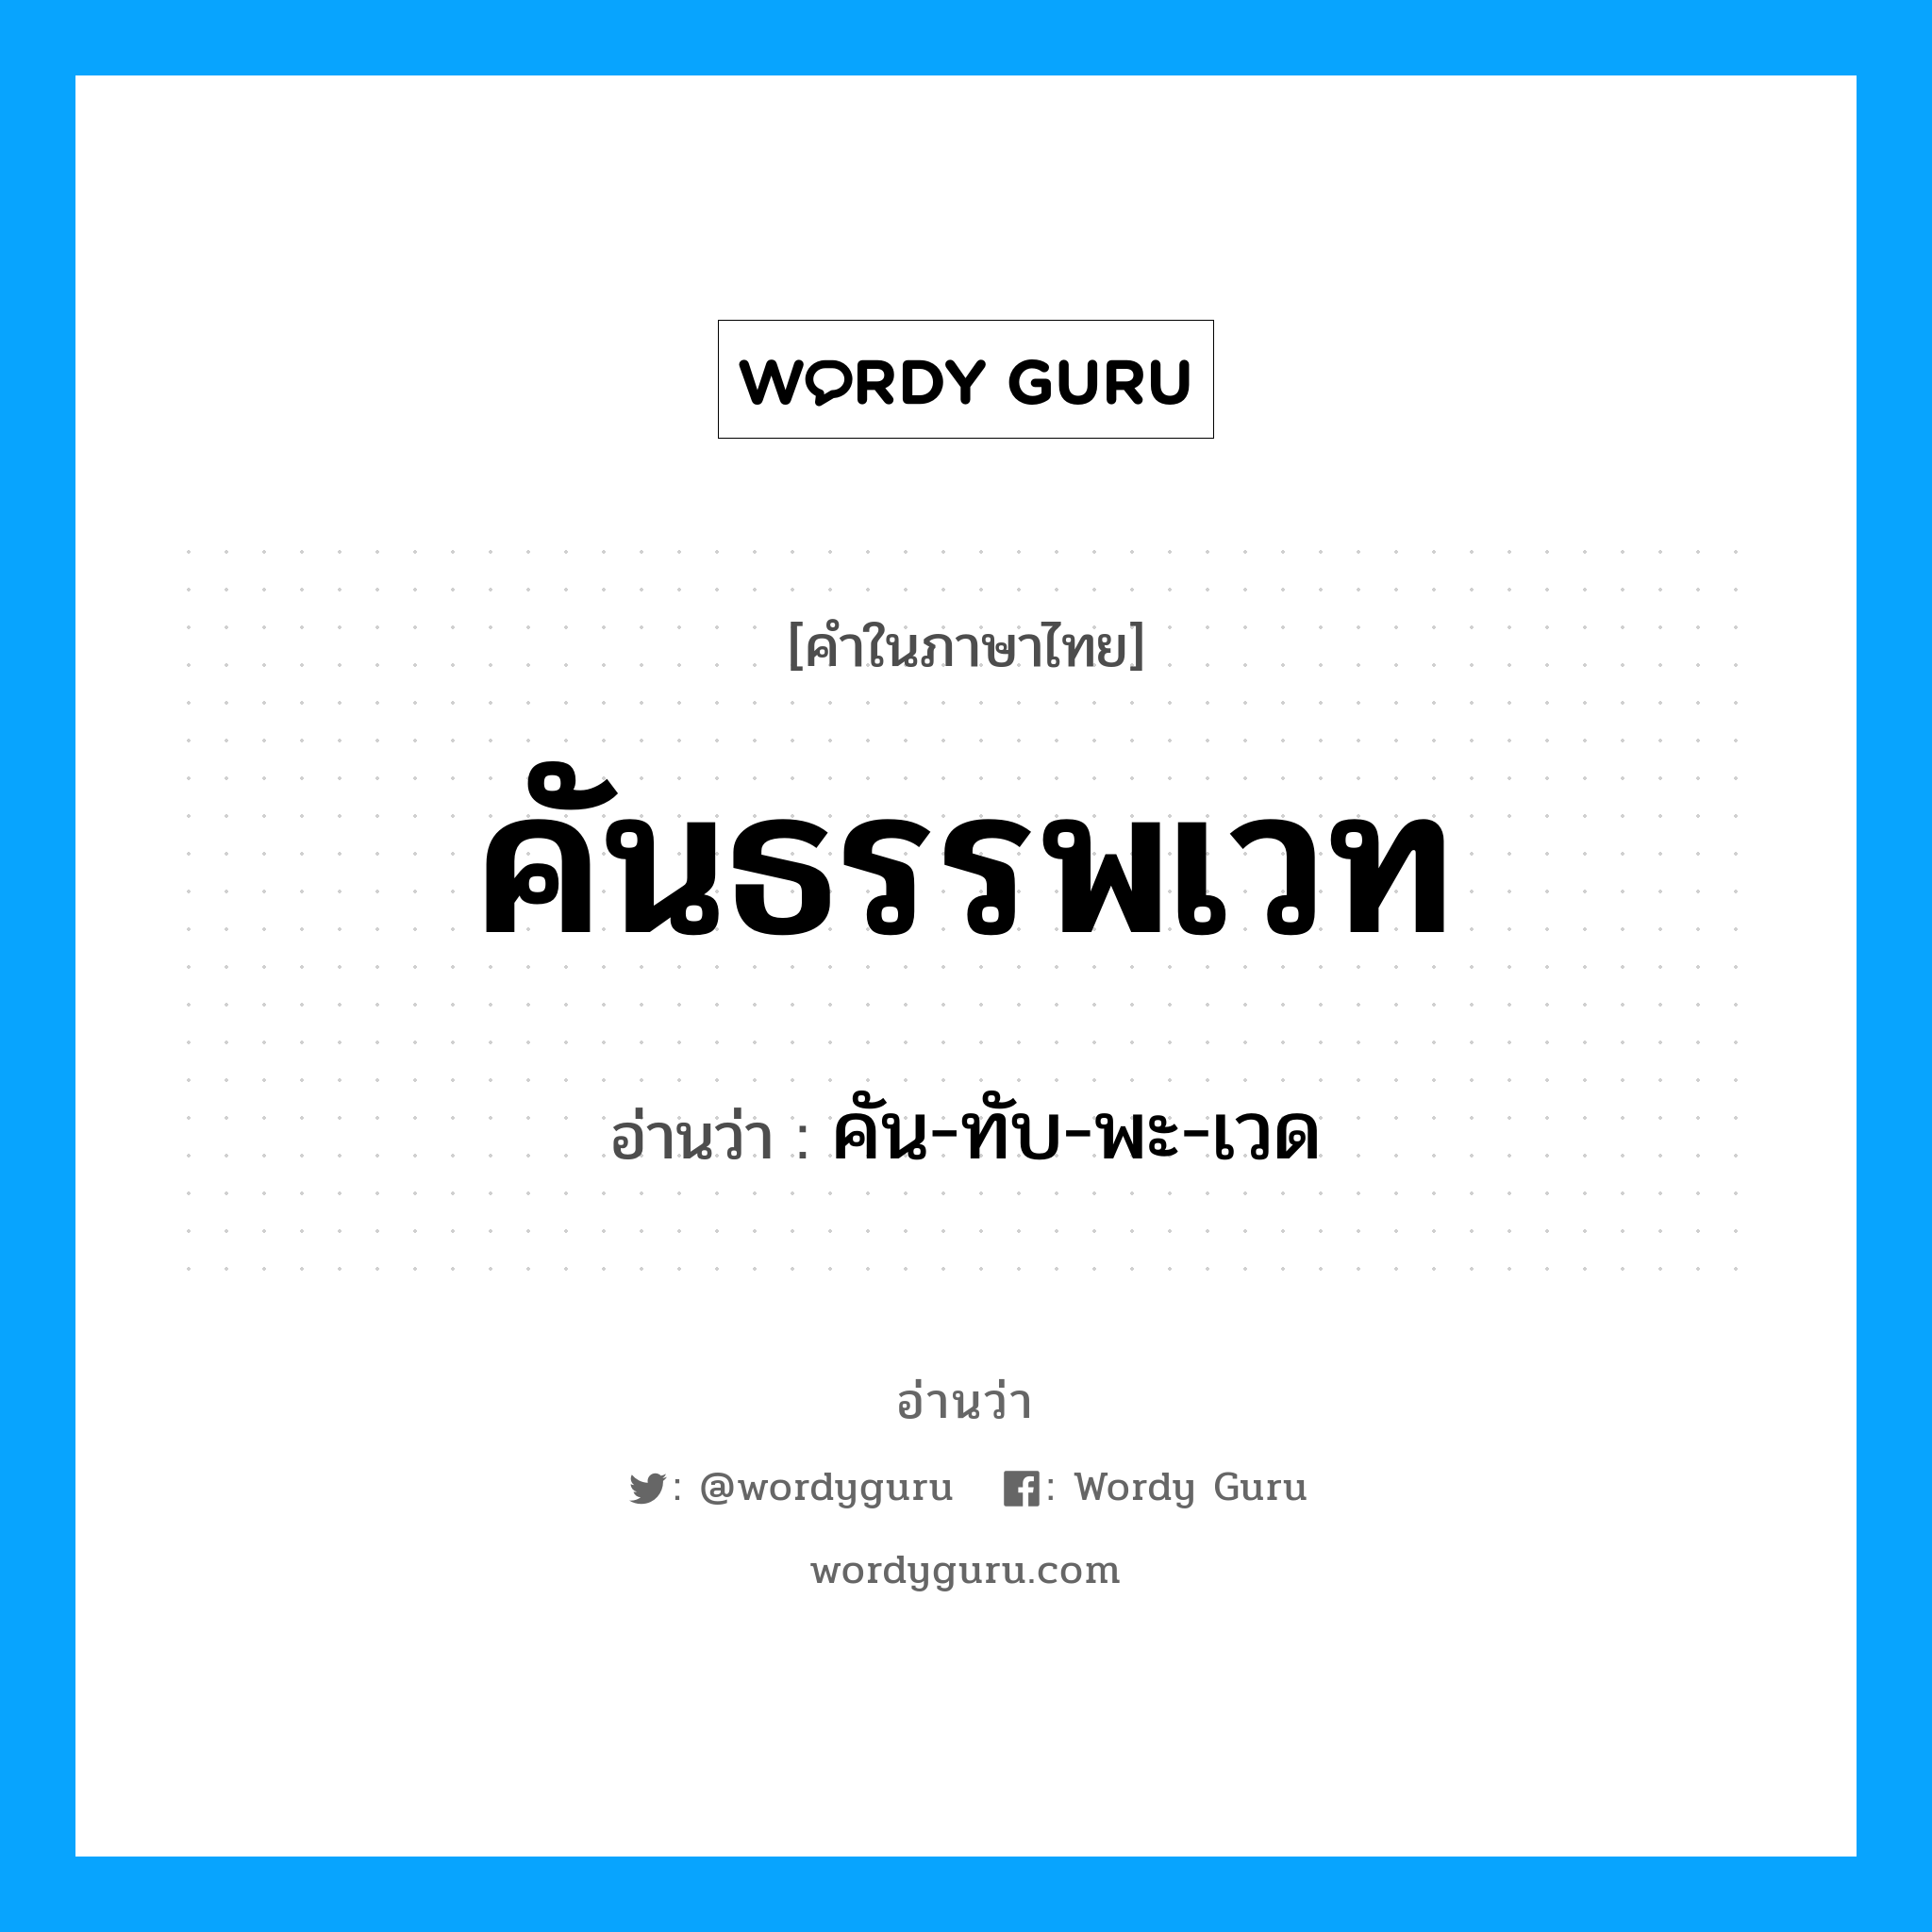 คัน-ทับ-พะ-เวด เป็นคำอ่านของคำไหน?, คำในภาษาไทย คัน-ทับ-พะ-เวด อ่านว่า คันธรรพเวท